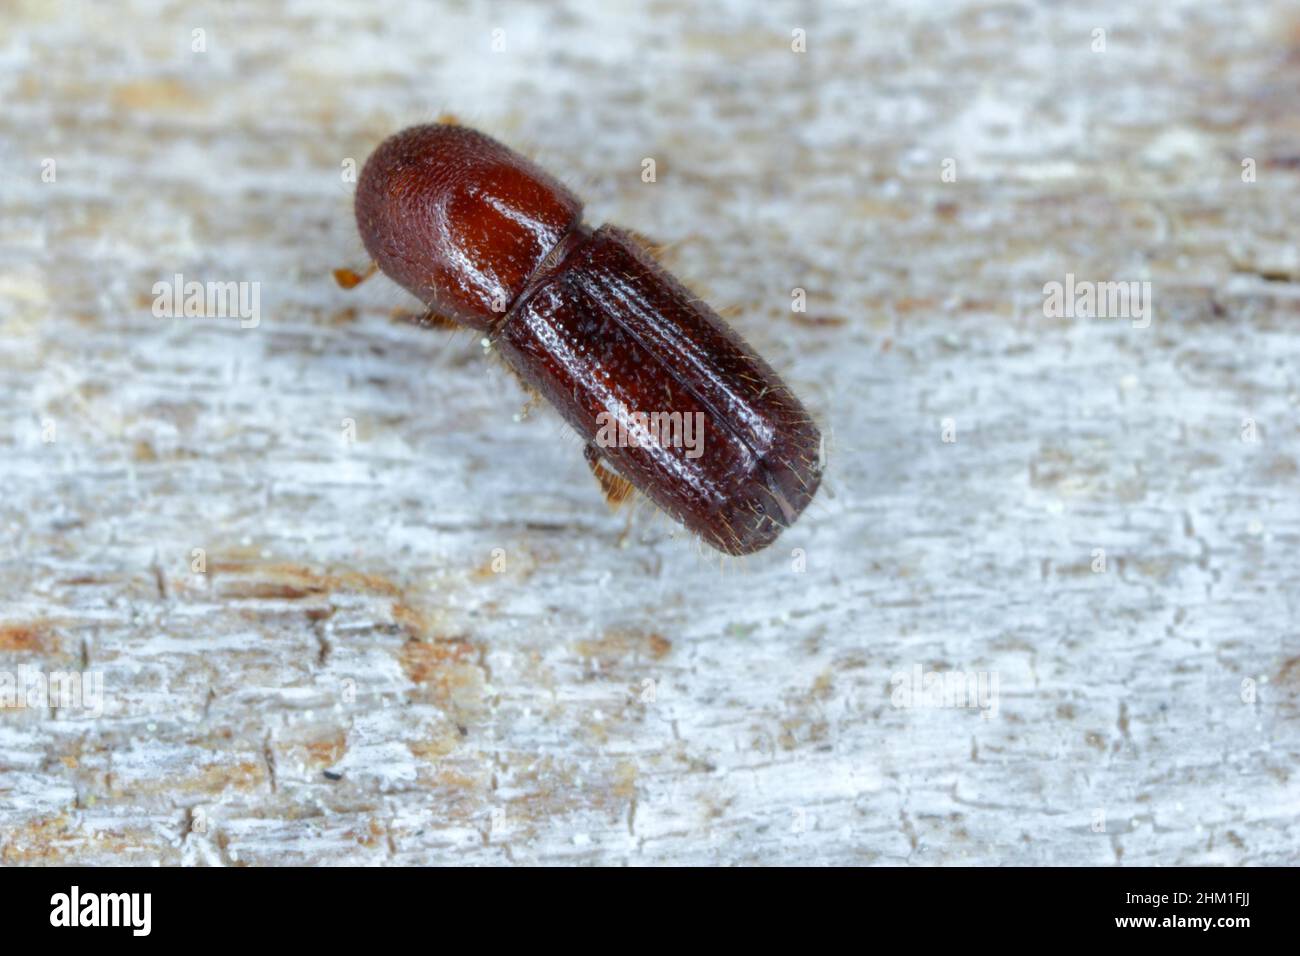 Ambrosia beetle, Xyleborus monographus on wood. High macro magnification. Stock Photo